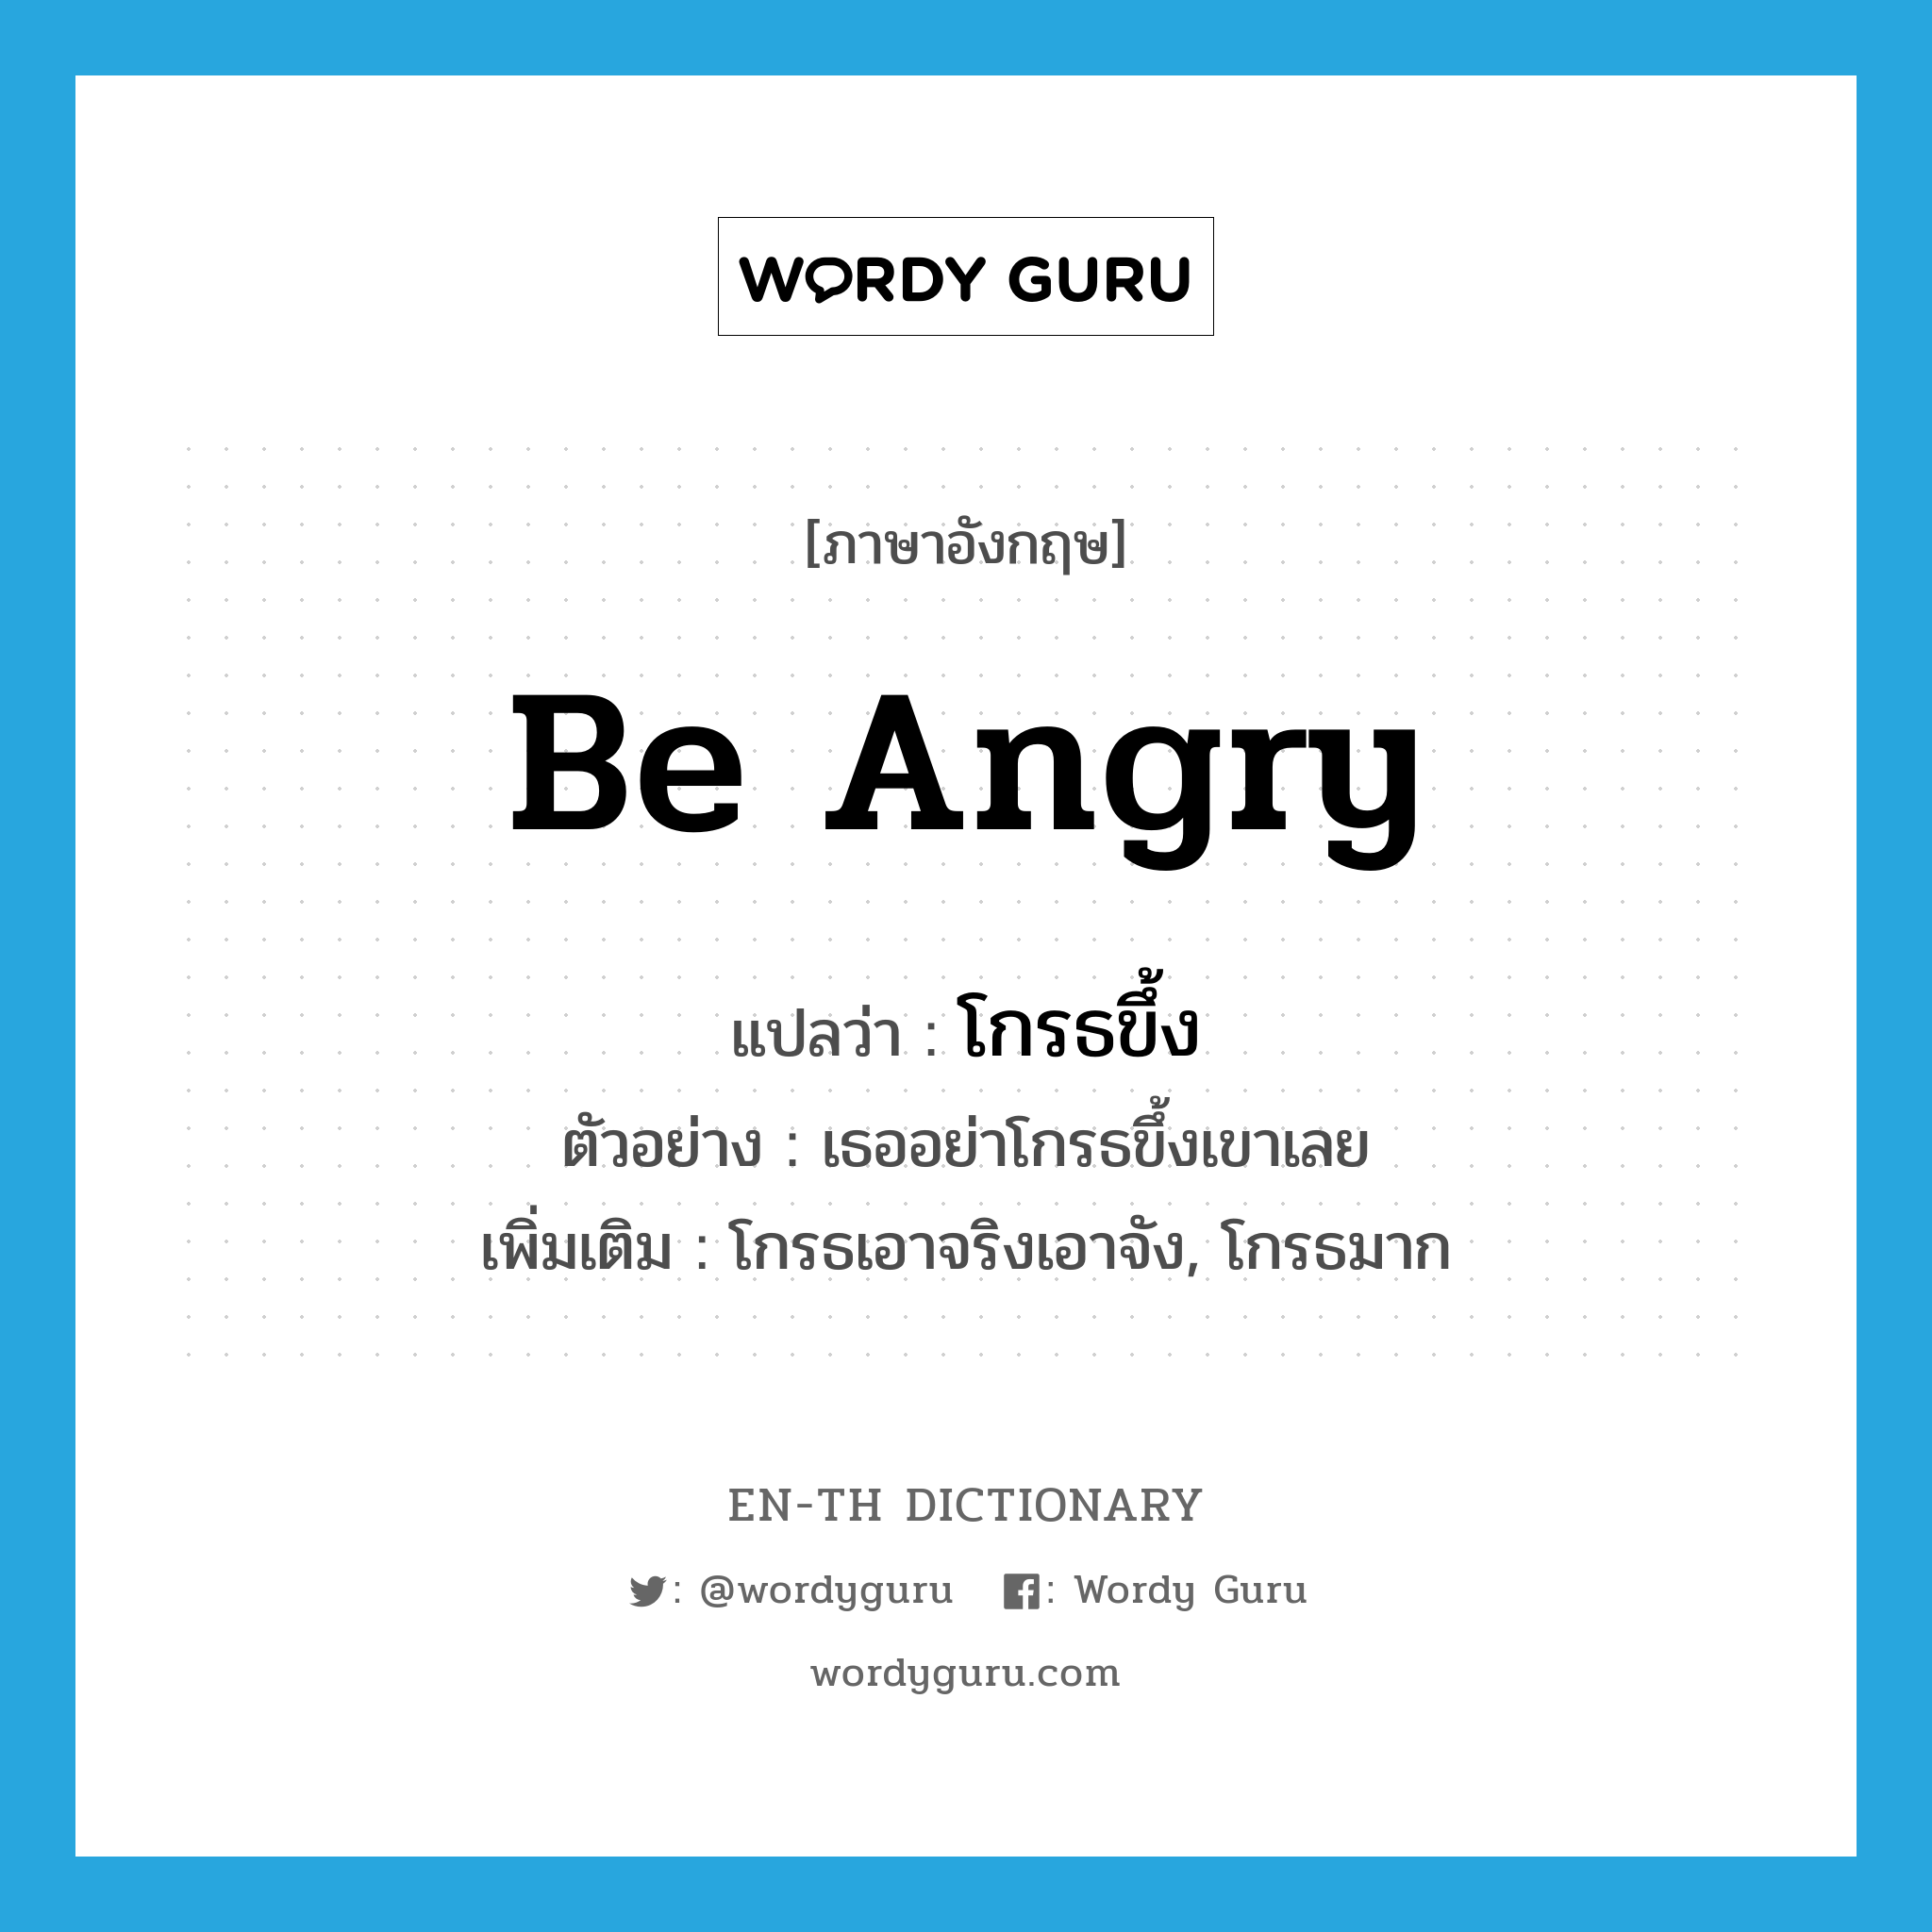 be angry แปลว่า?, คำศัพท์ภาษาอังกฤษ be angry แปลว่า โกรธขึ้ง ประเภท V ตัวอย่าง เธออย่าโกรธขึ้งเขาเลย เพิ่มเติม โกรธเอาจริงเอาจัง, โกรธมาก หมวด V